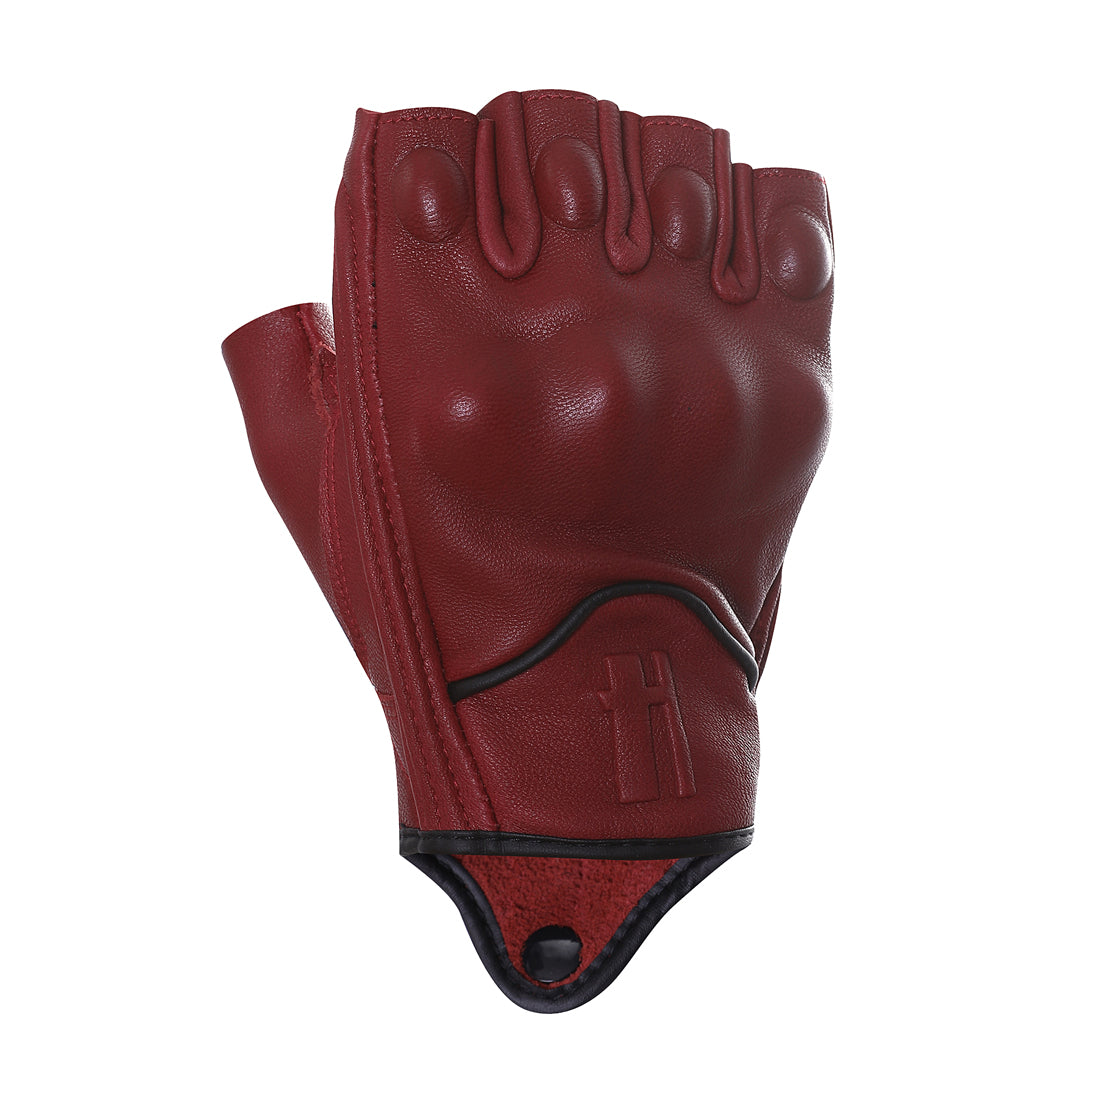 Leather Fingerless Gloves for Men, Fingerless Gloves, Black